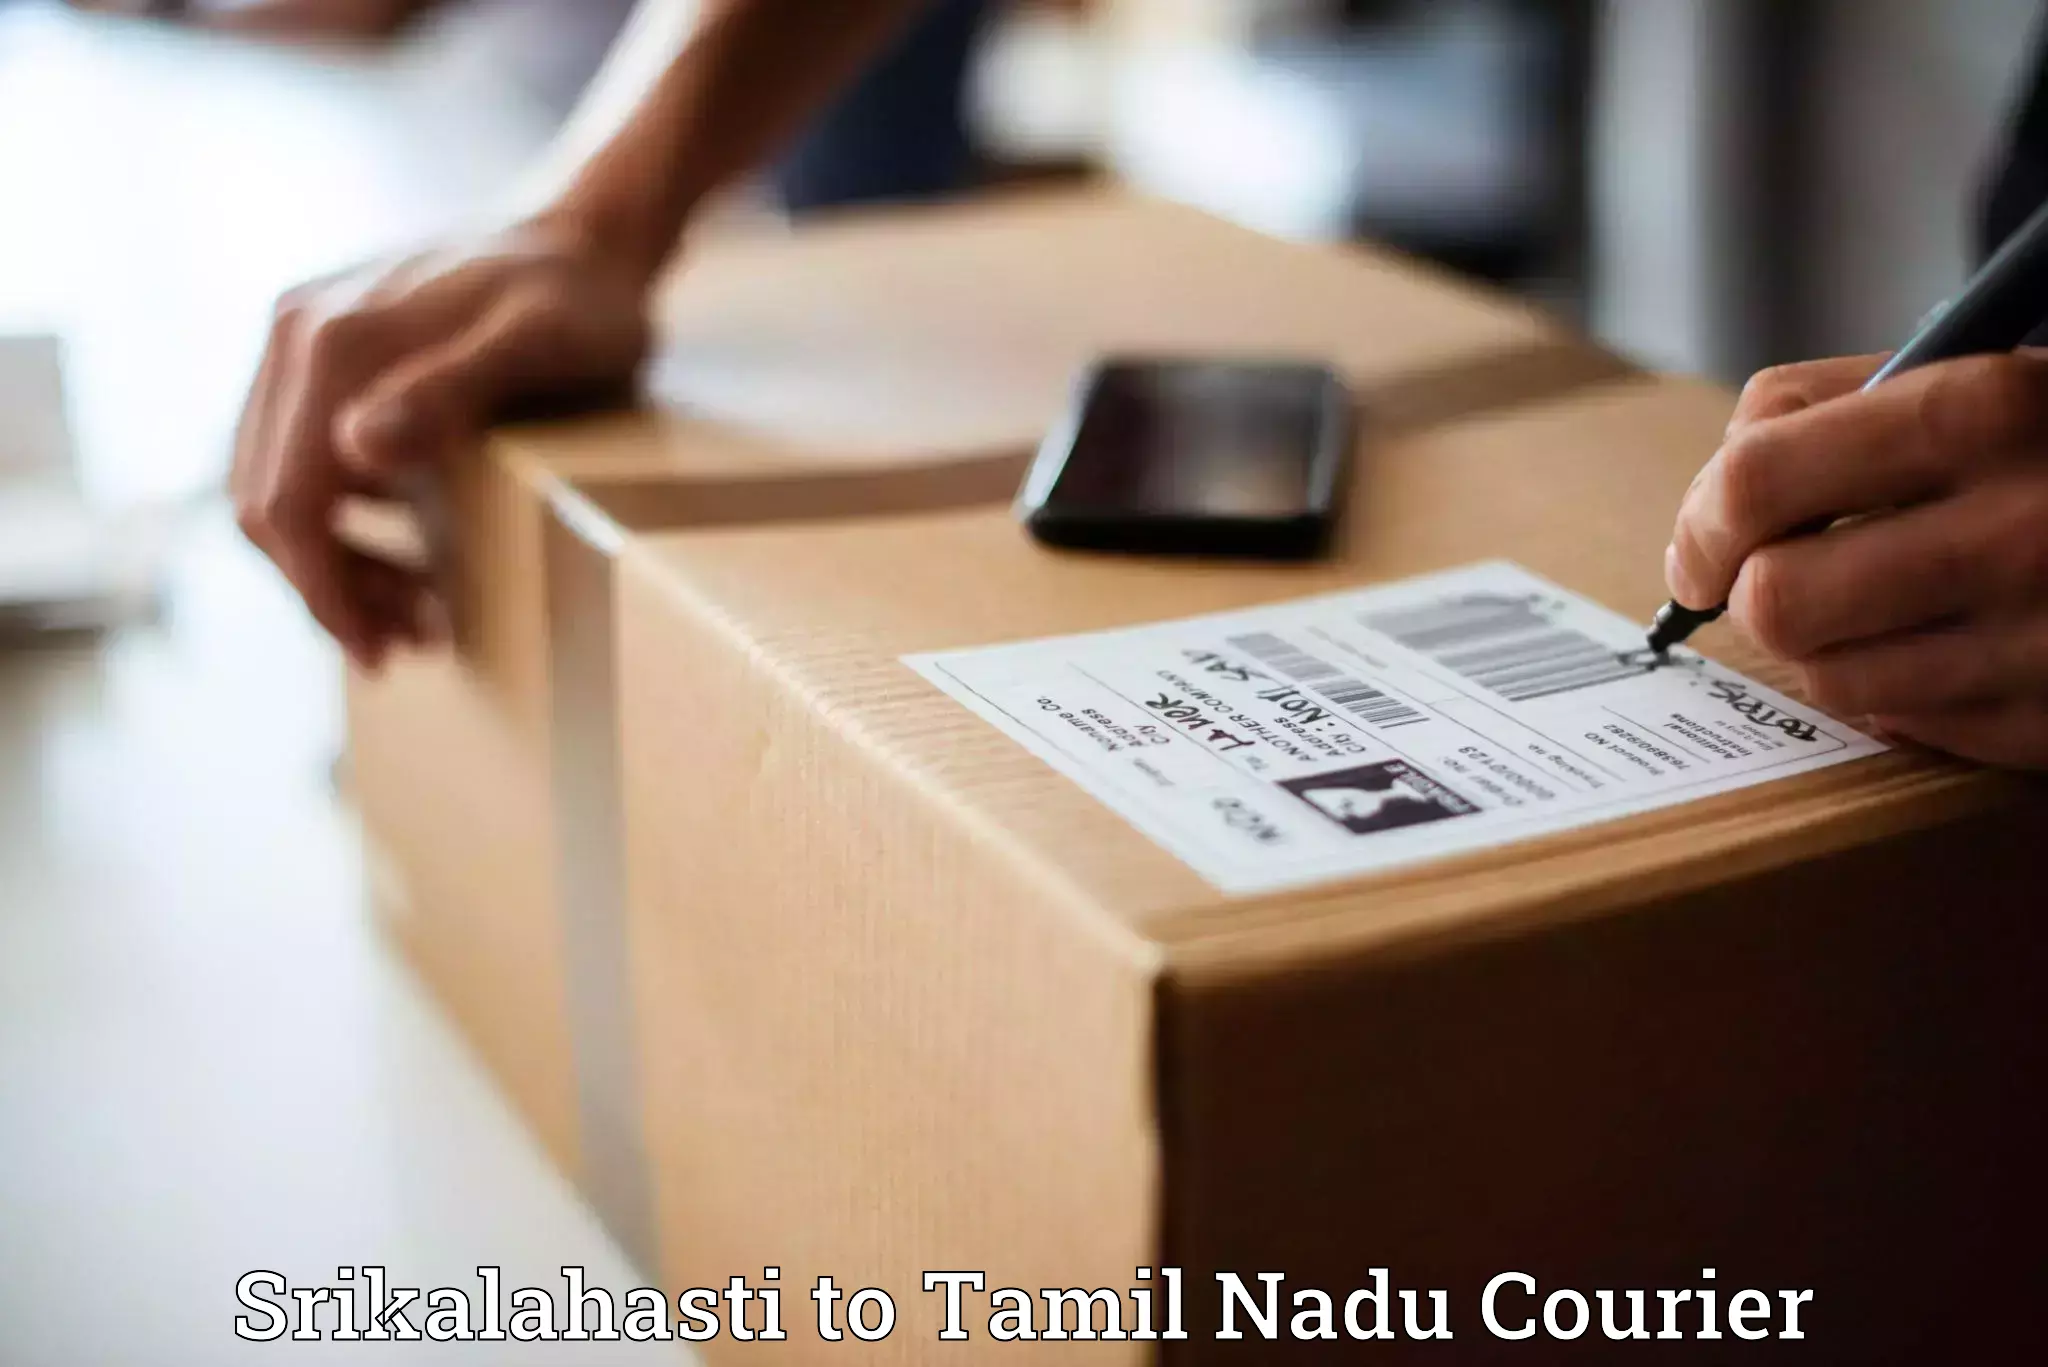 Bulk shipping discounts Srikalahasti to Ramanathapuram